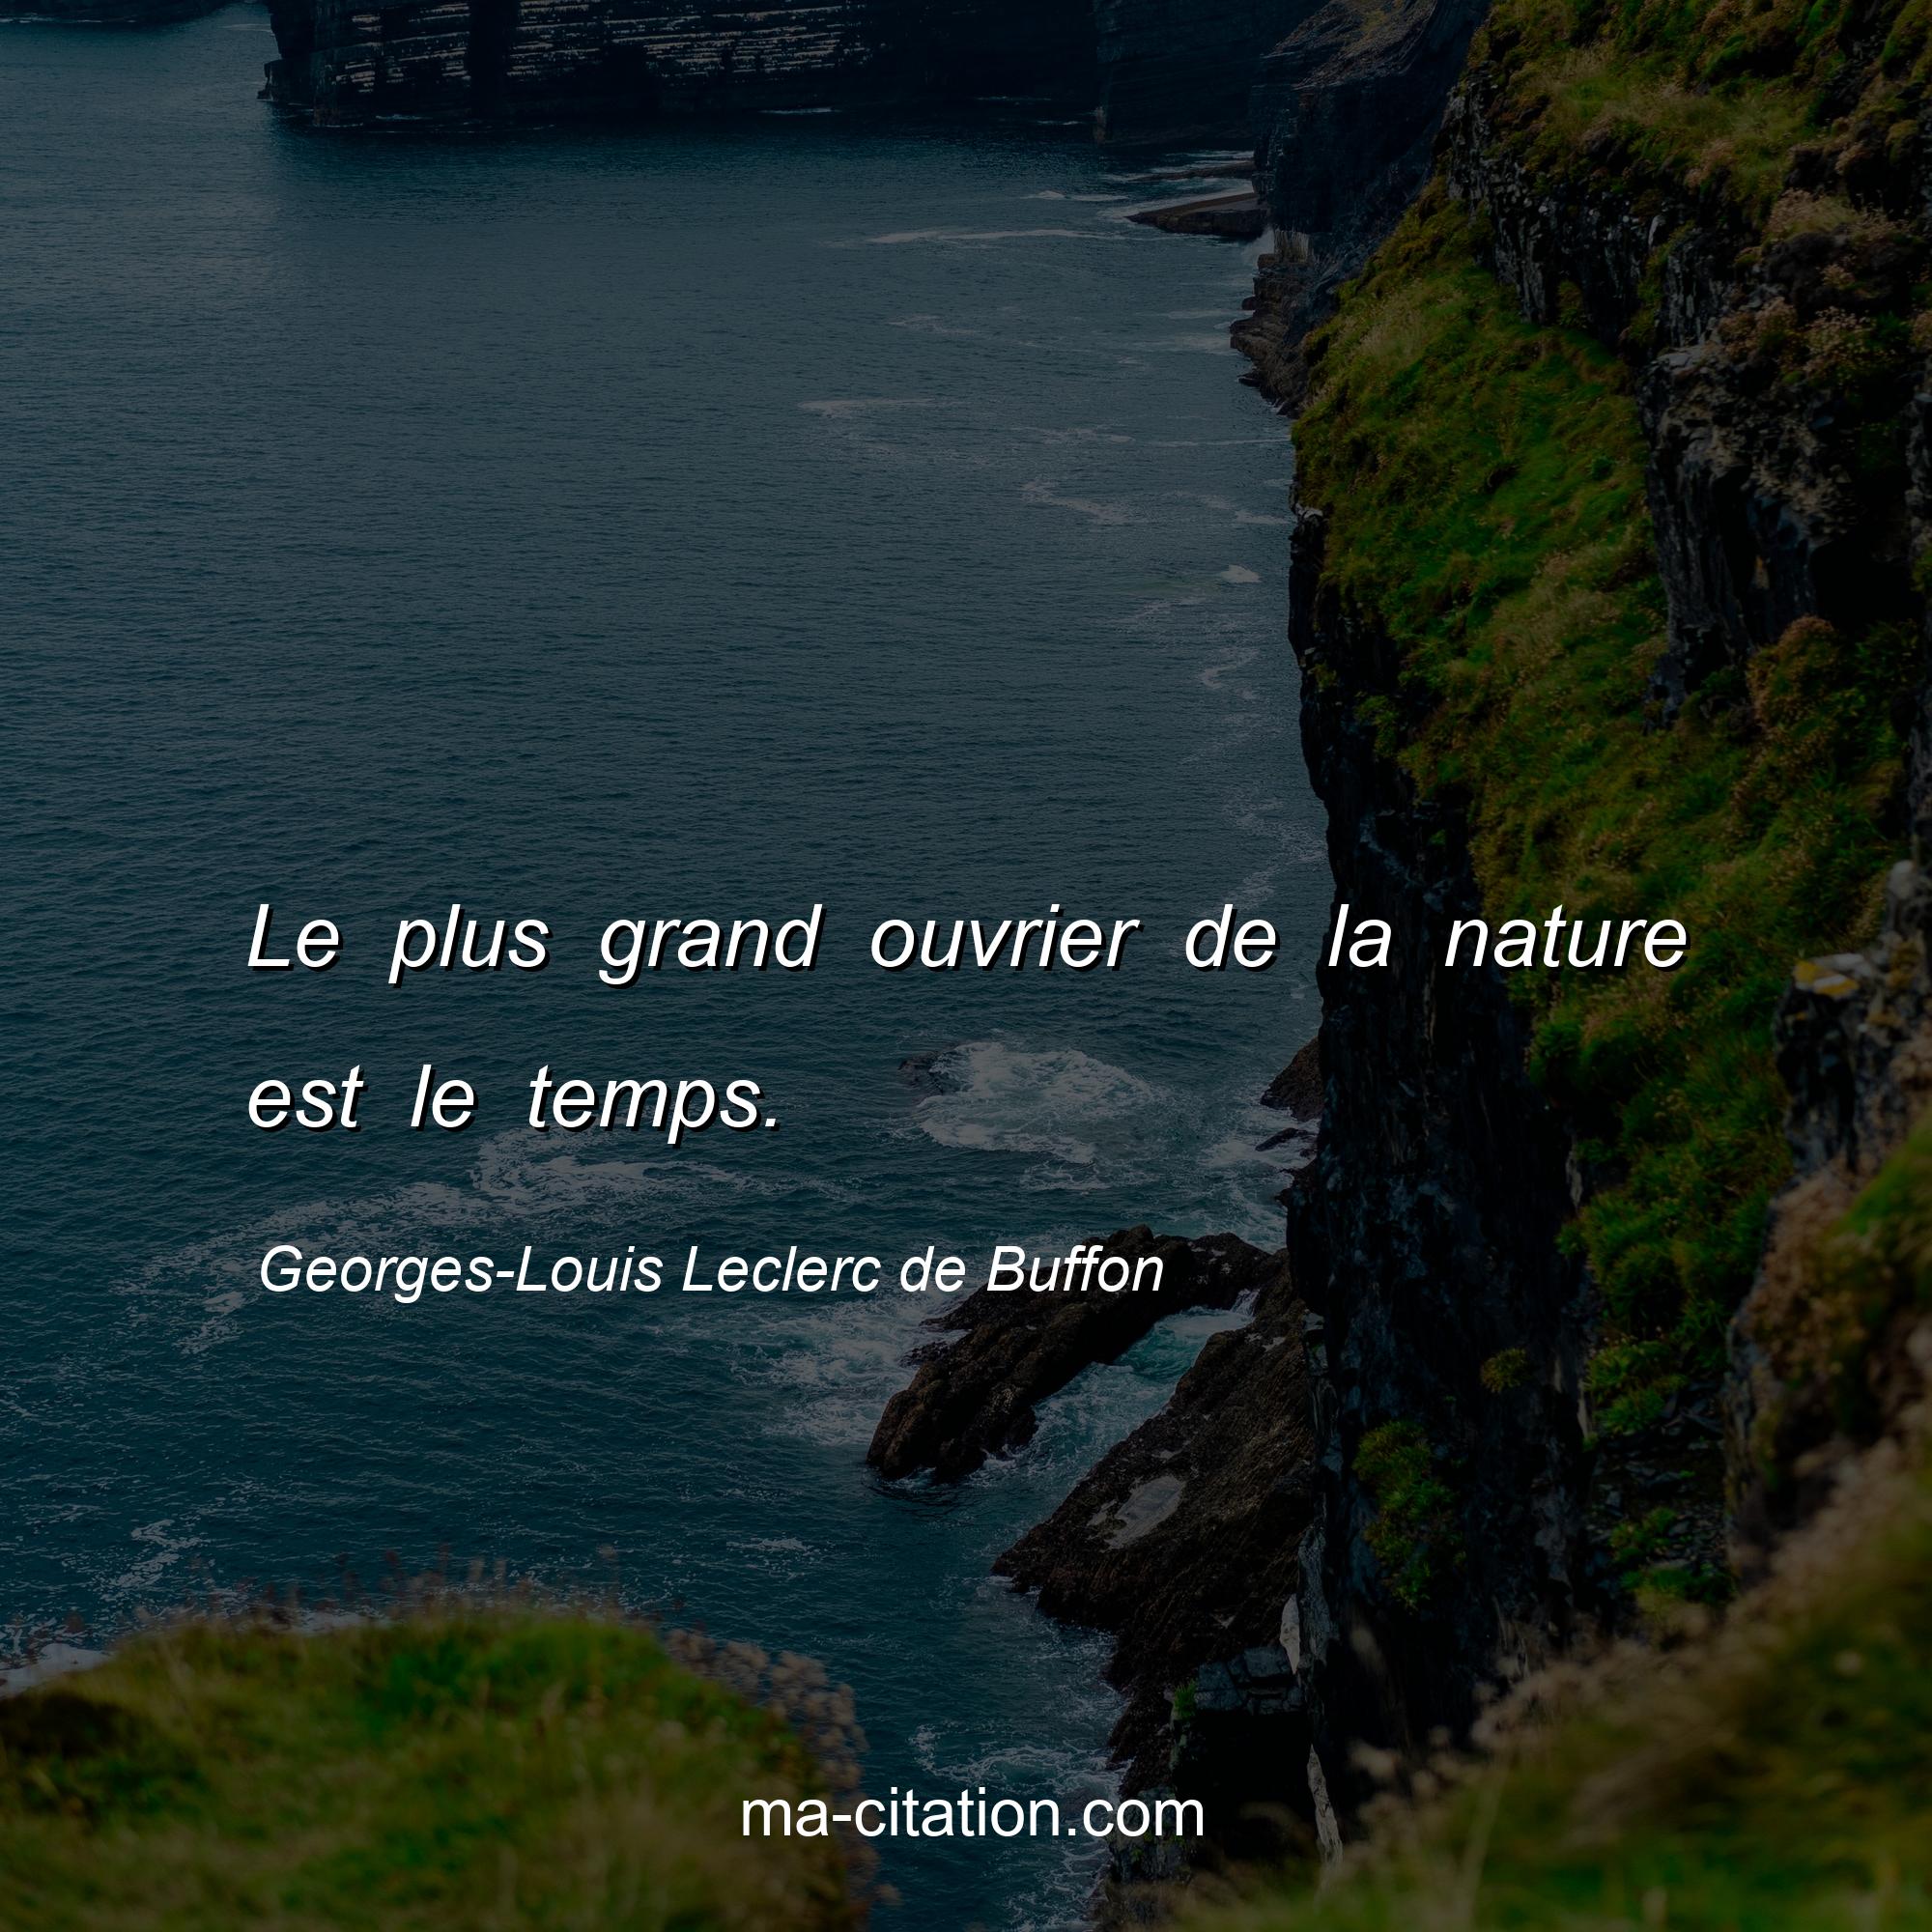 Georges-Louis Leclerc de Buffon : Le plus grand ouvrier de la nature est le temps.